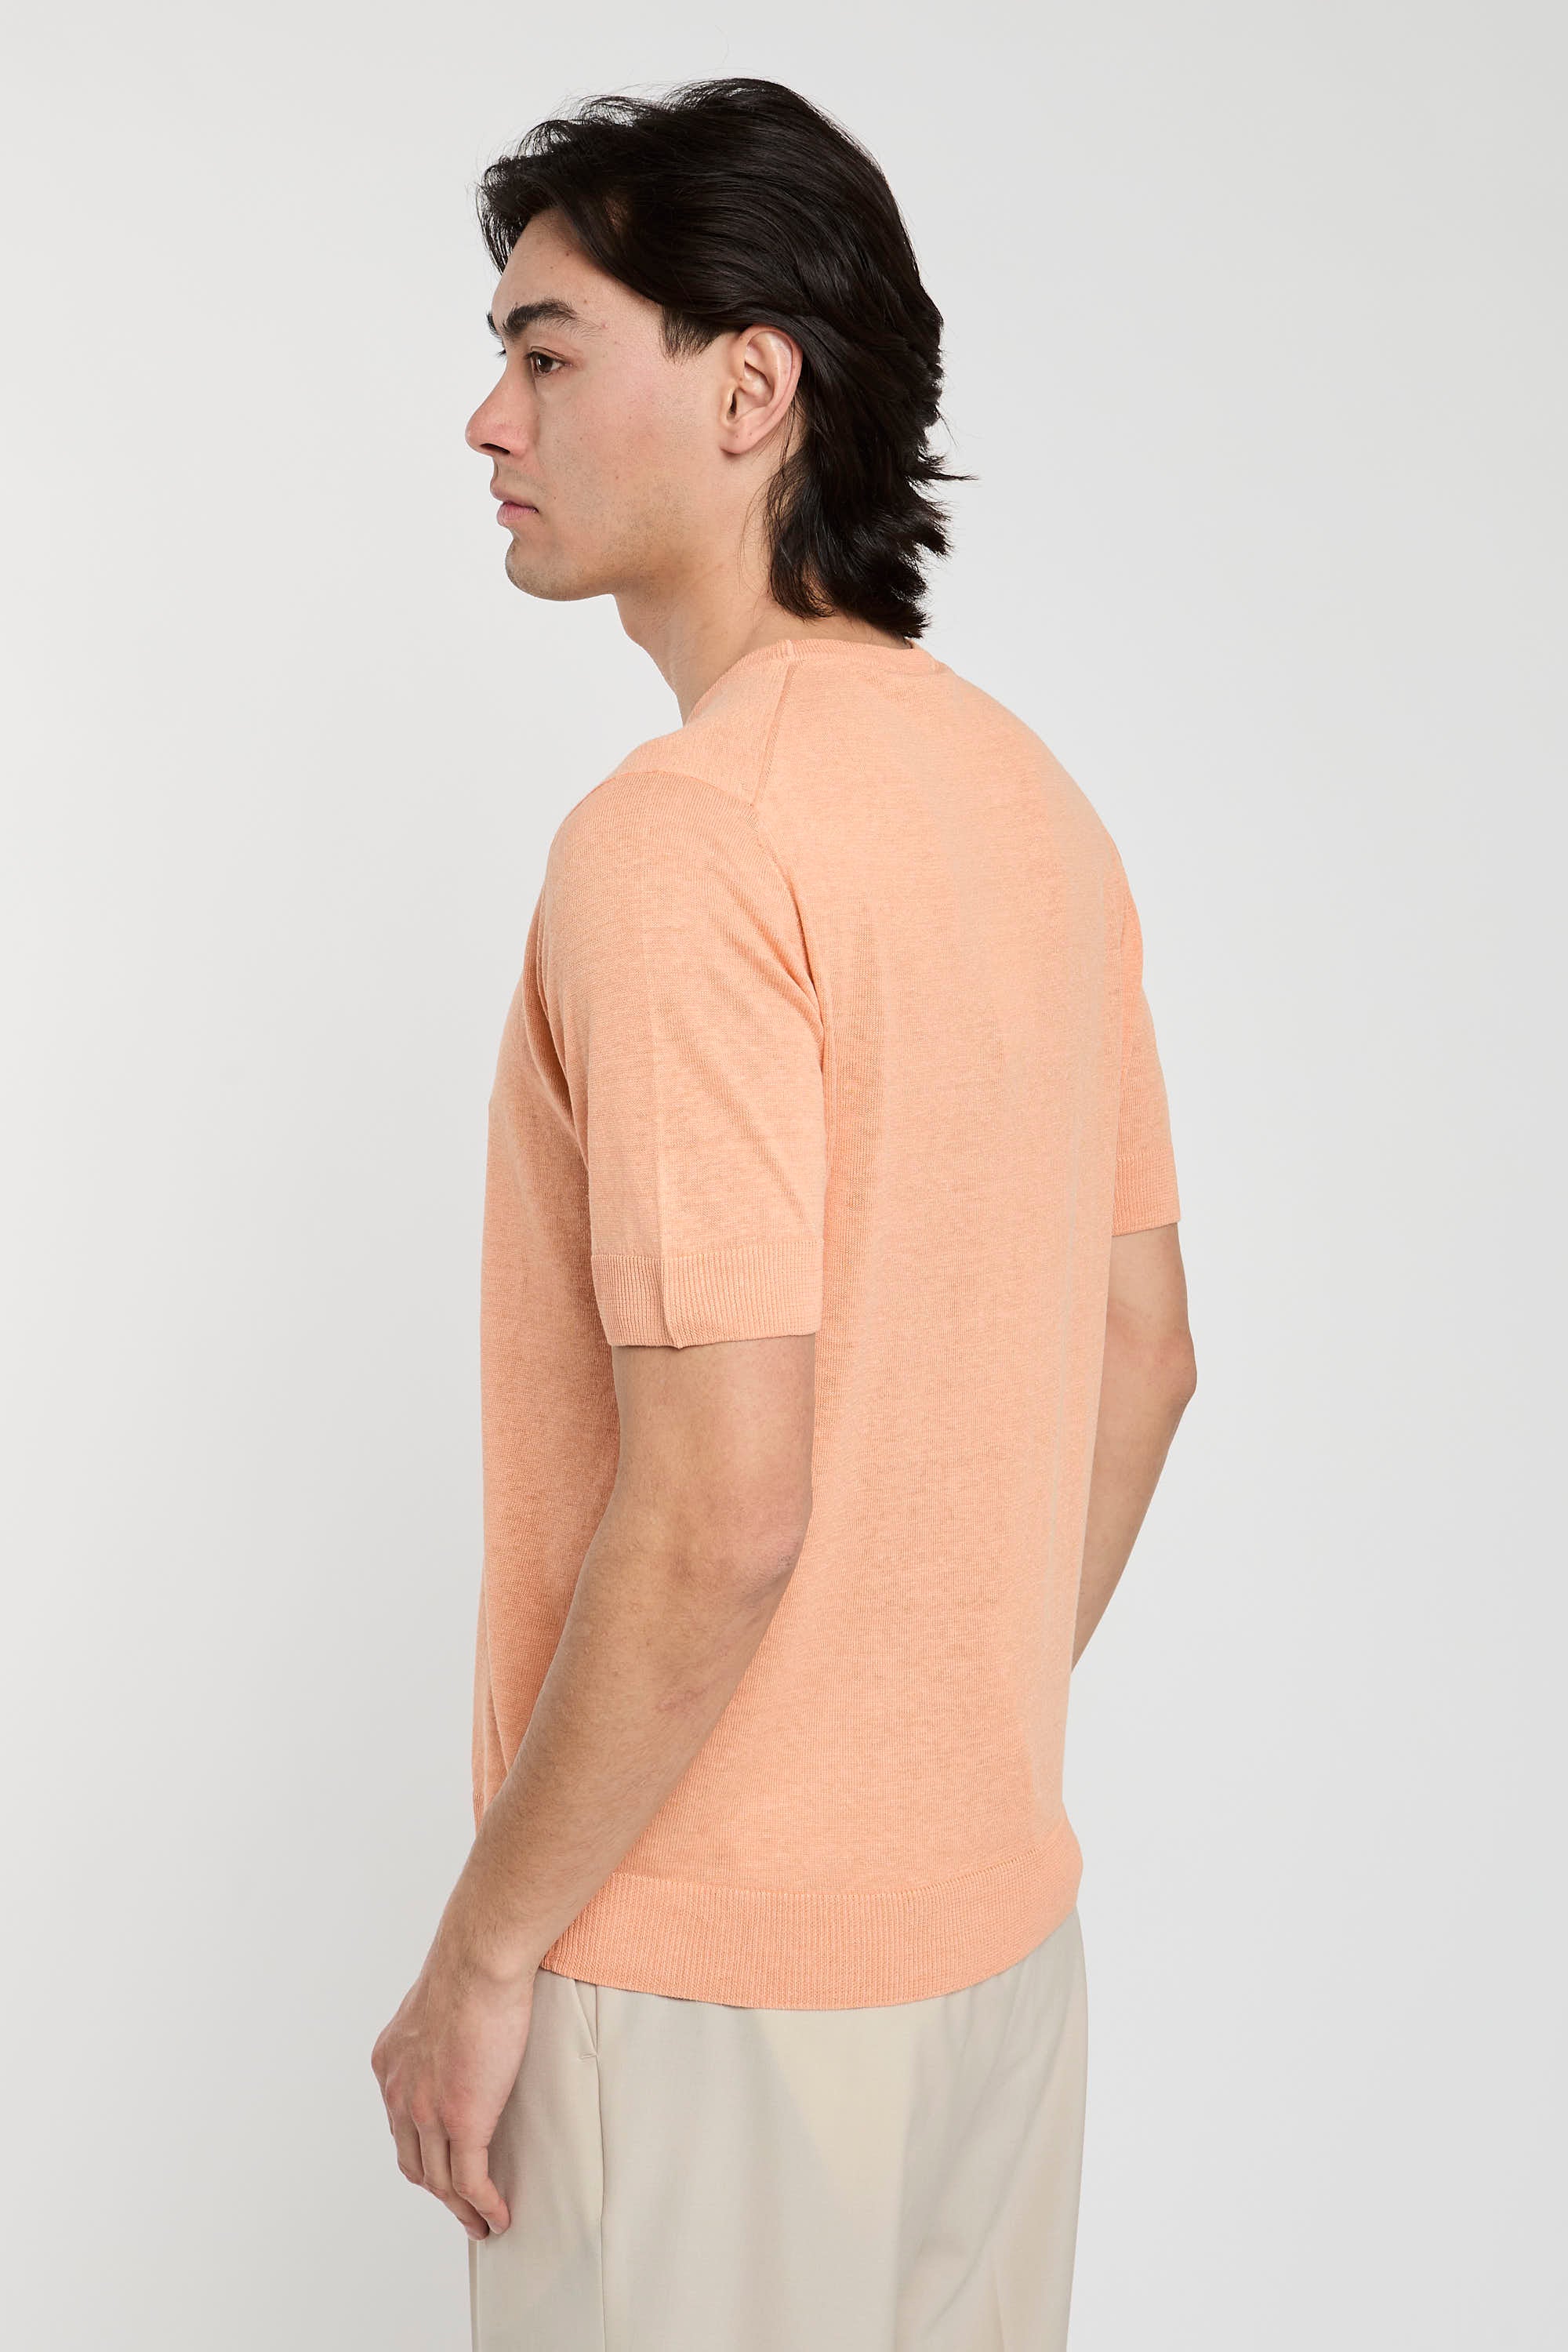 Filippo De Laurentiis Silk/Linen Pink T-Shirt-6